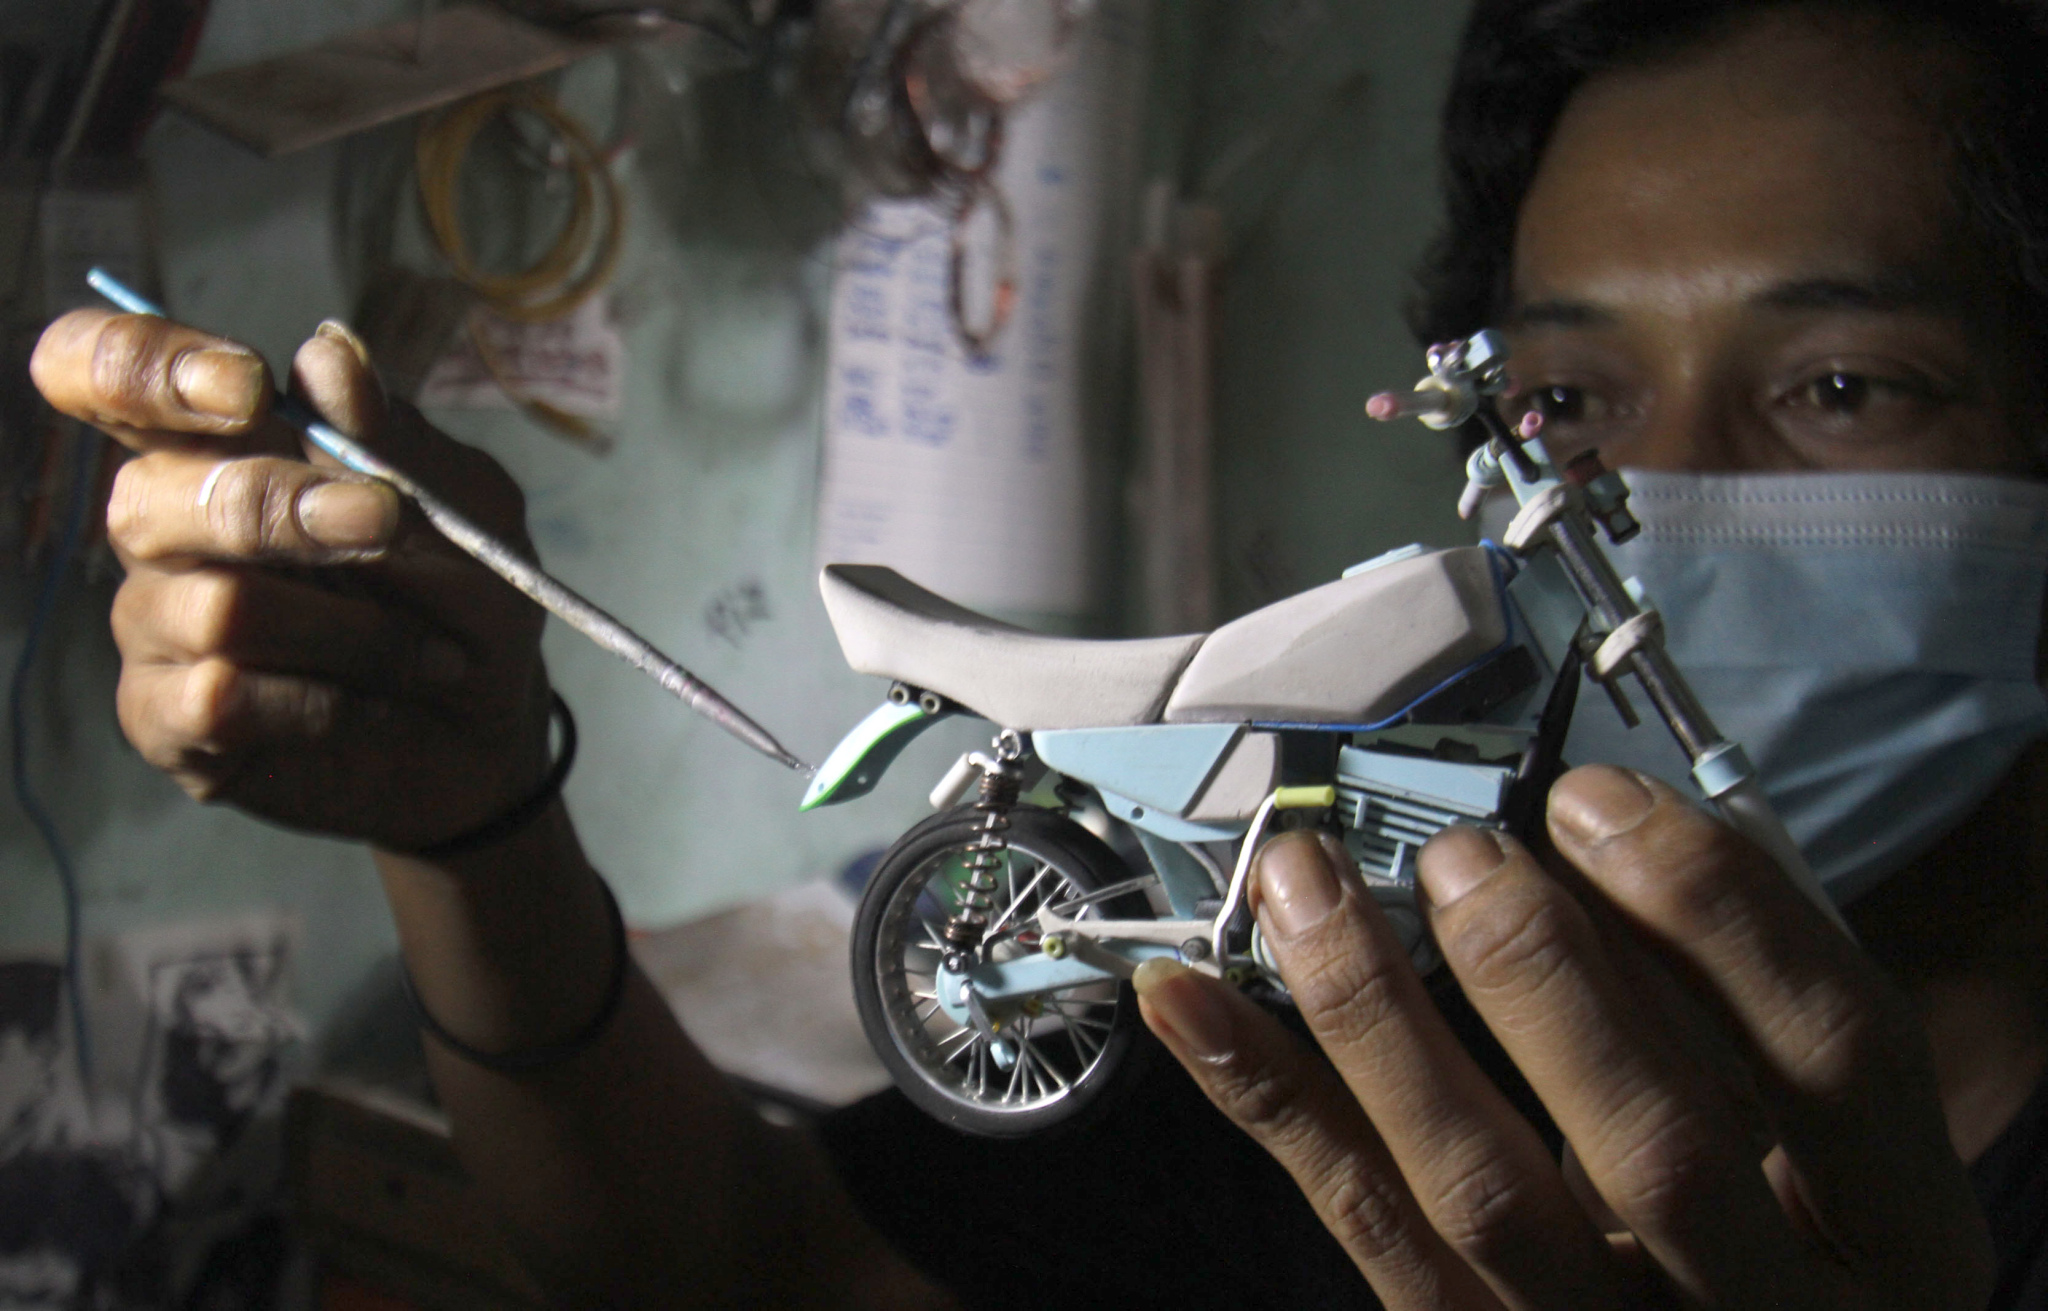 Intip Kreasi Miniatur Sepeda Motor Terbuat Dari Barang Bekas - TrenAsia